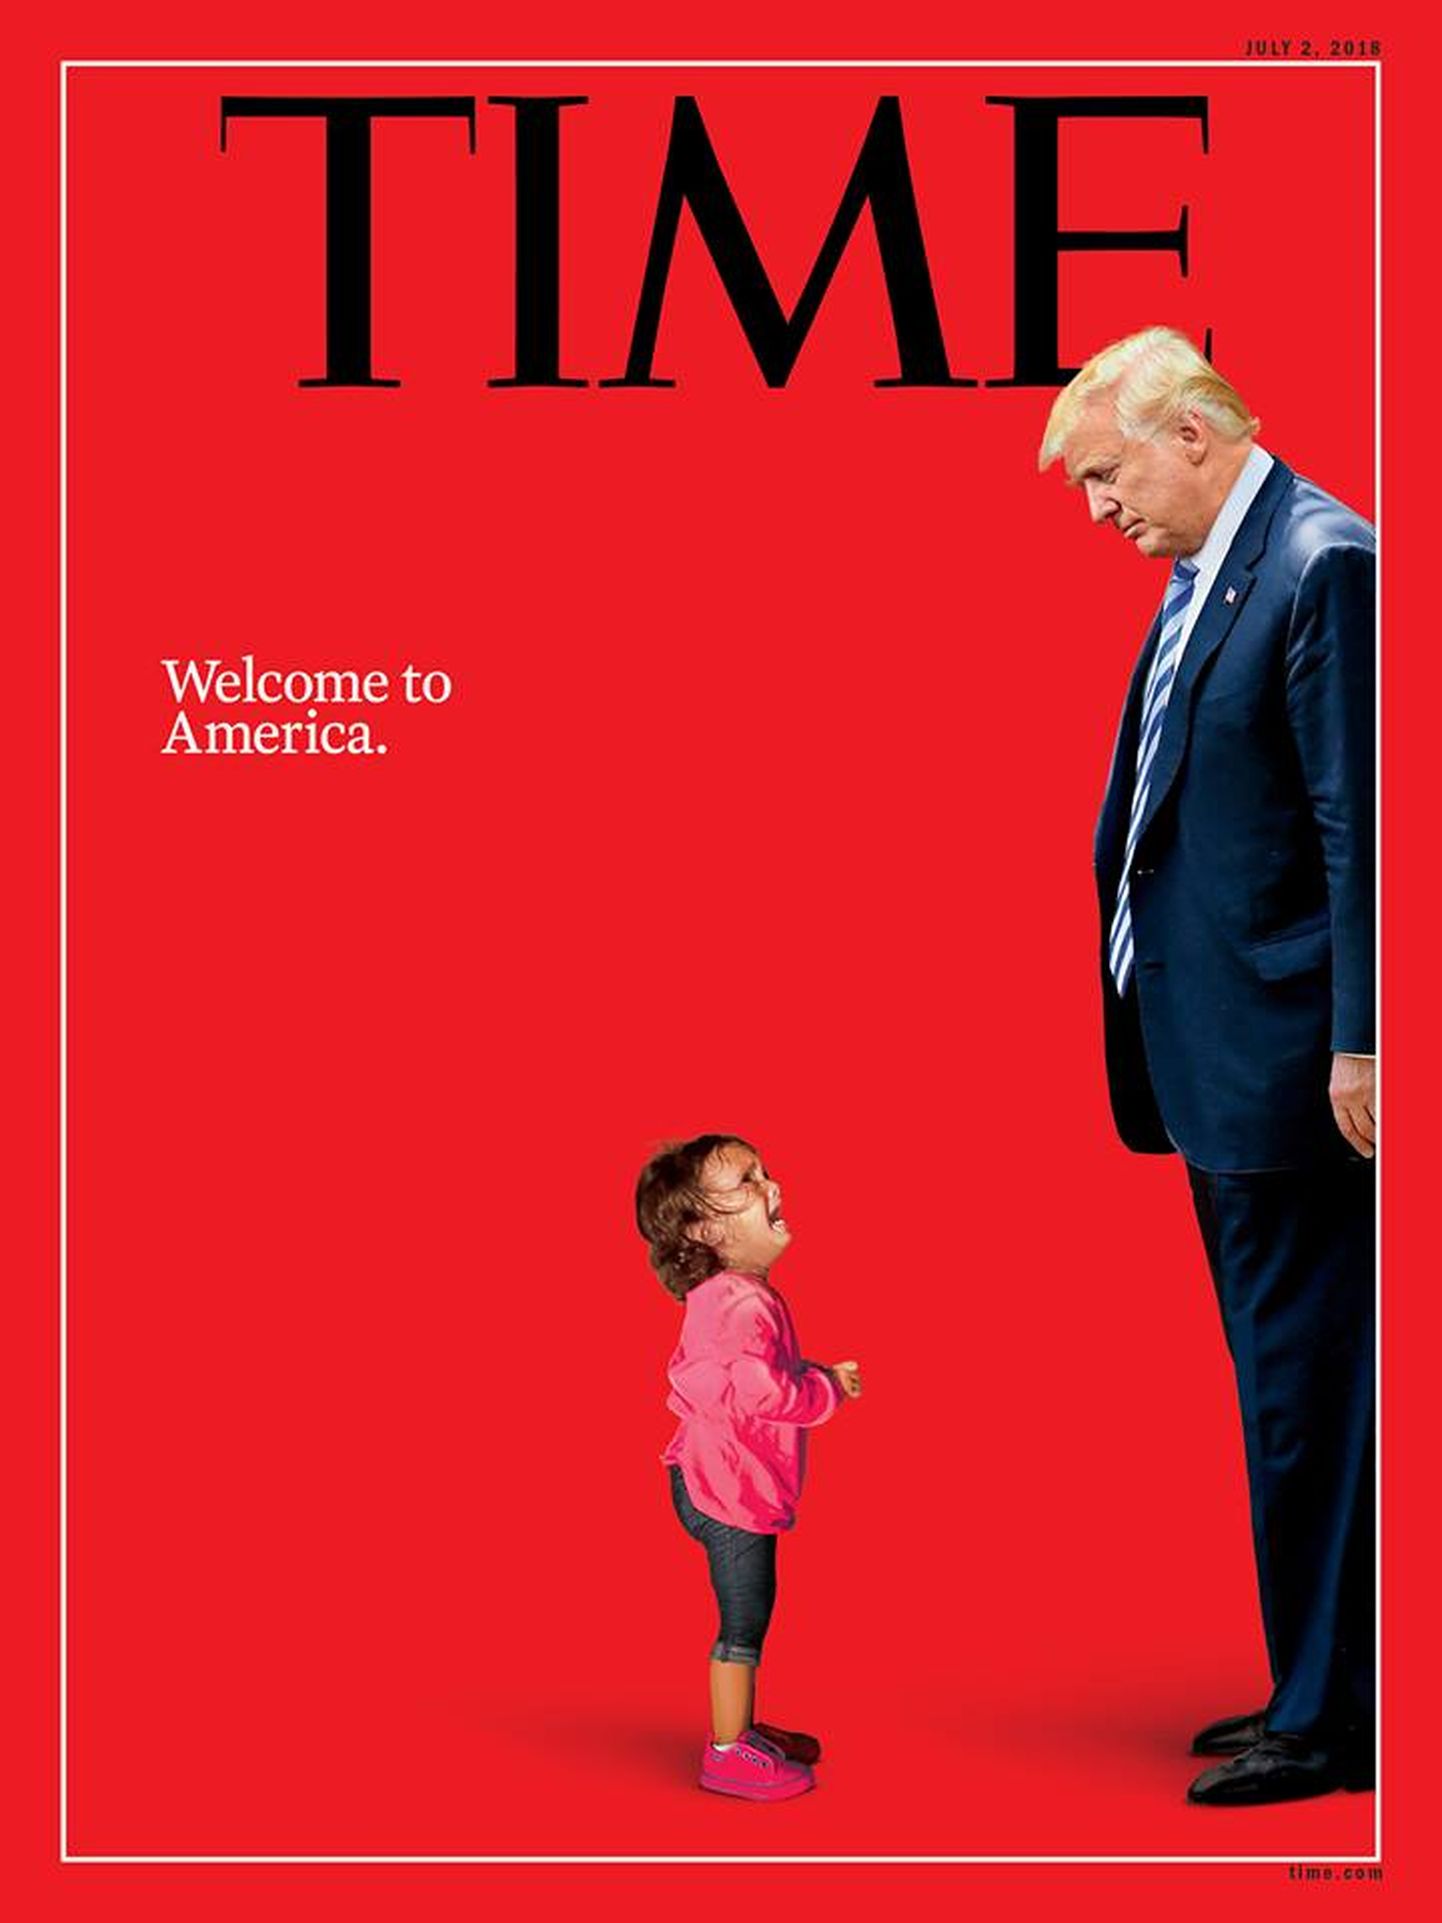 Ajakirja Time esikaas, kus on kujutatud Donald Trumpi ja nutvat tüdrukut.